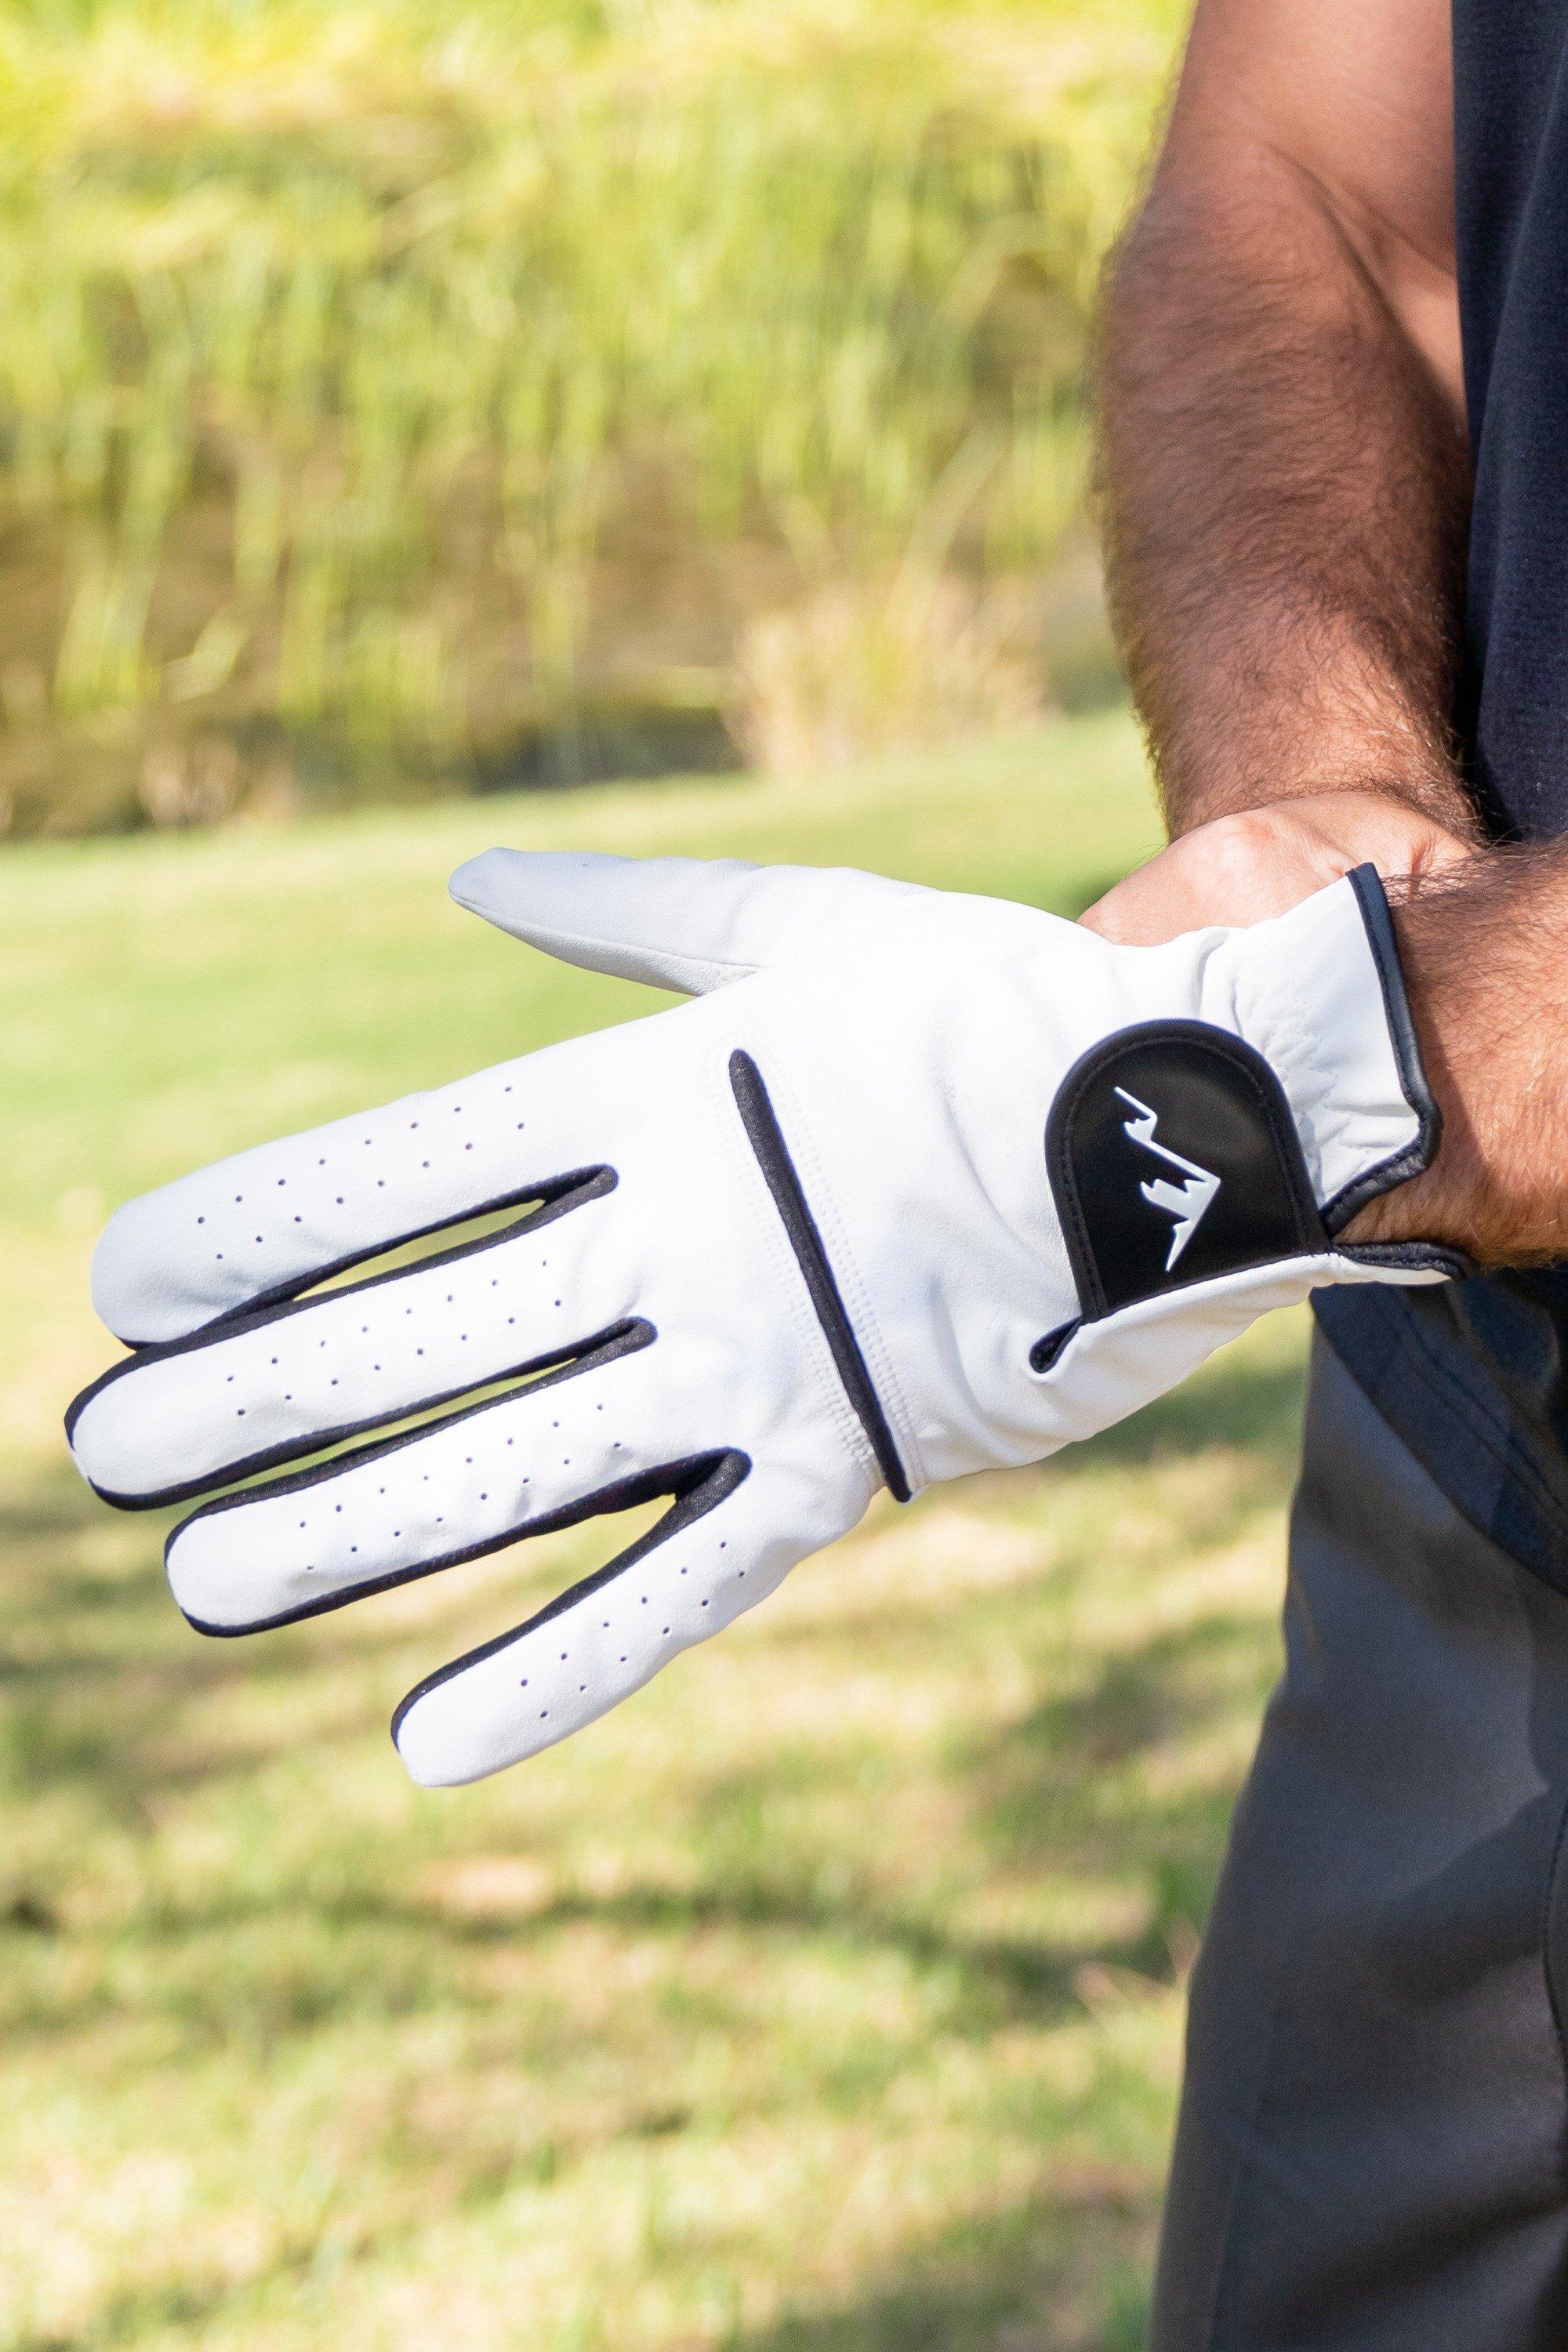 Спортивные перчатки Portrush Golf Performance Glove Sports для правой руки Mountain Warehouse, белый